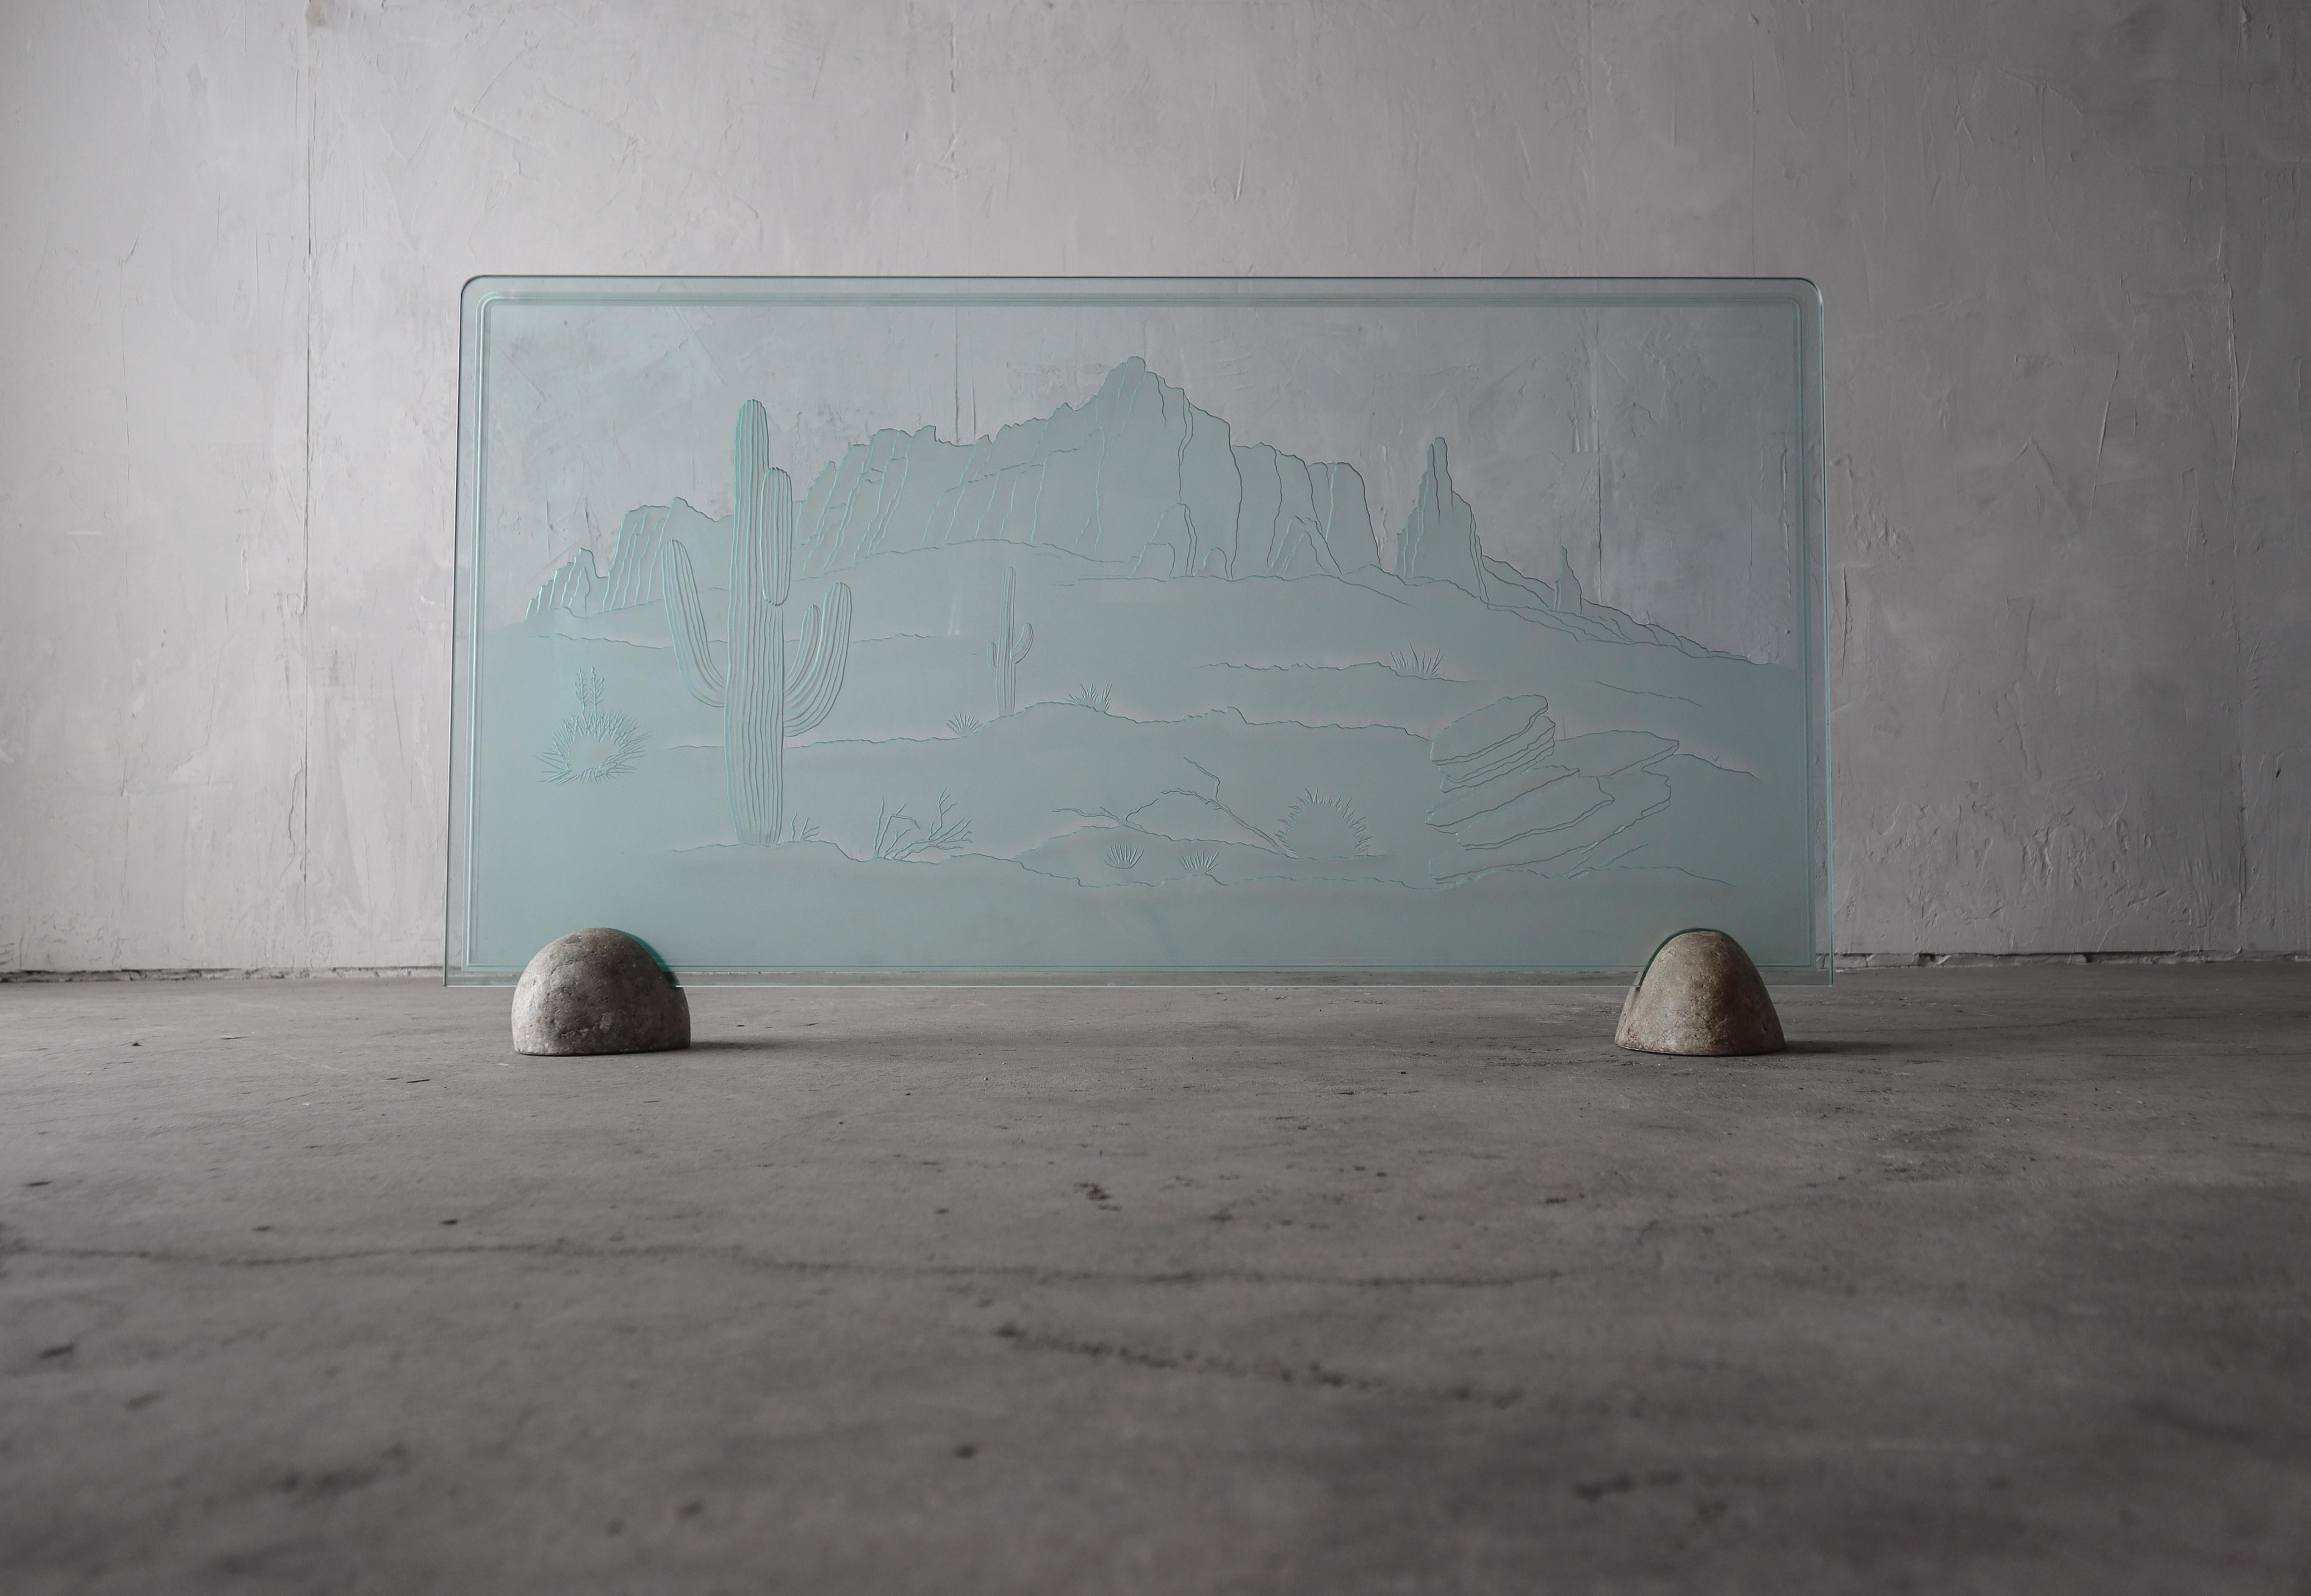 Einzigartiger Kaminschirm aus geätztem Glas mit Steinsockel.  Thema Wüste im Südwesten. 
 Sehr cooles Designstück.  Unterzeichnet D. Arnone '87

Kein Schaden.